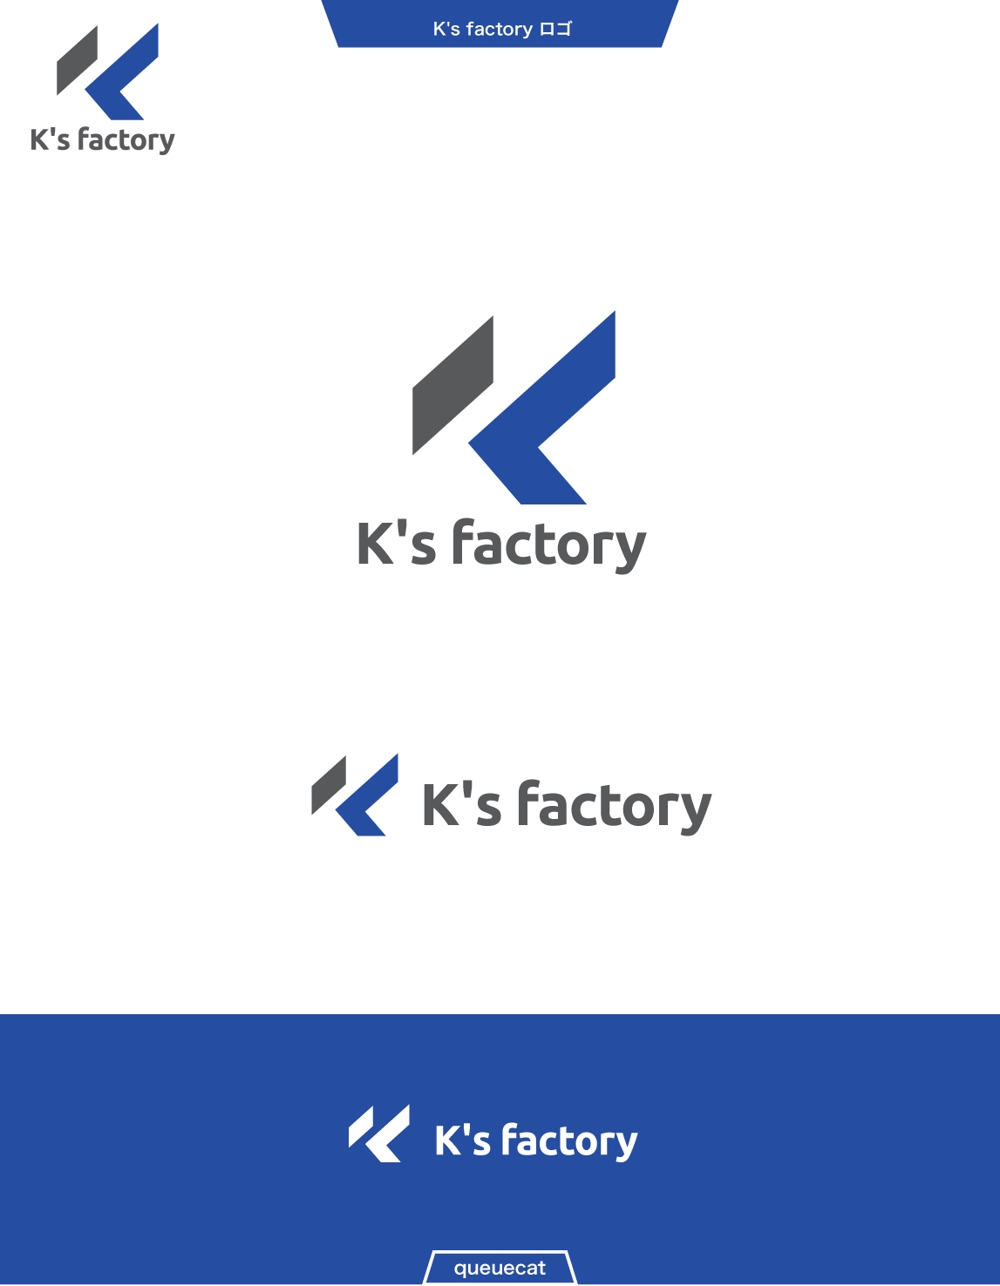 K's factory2_1.jpg